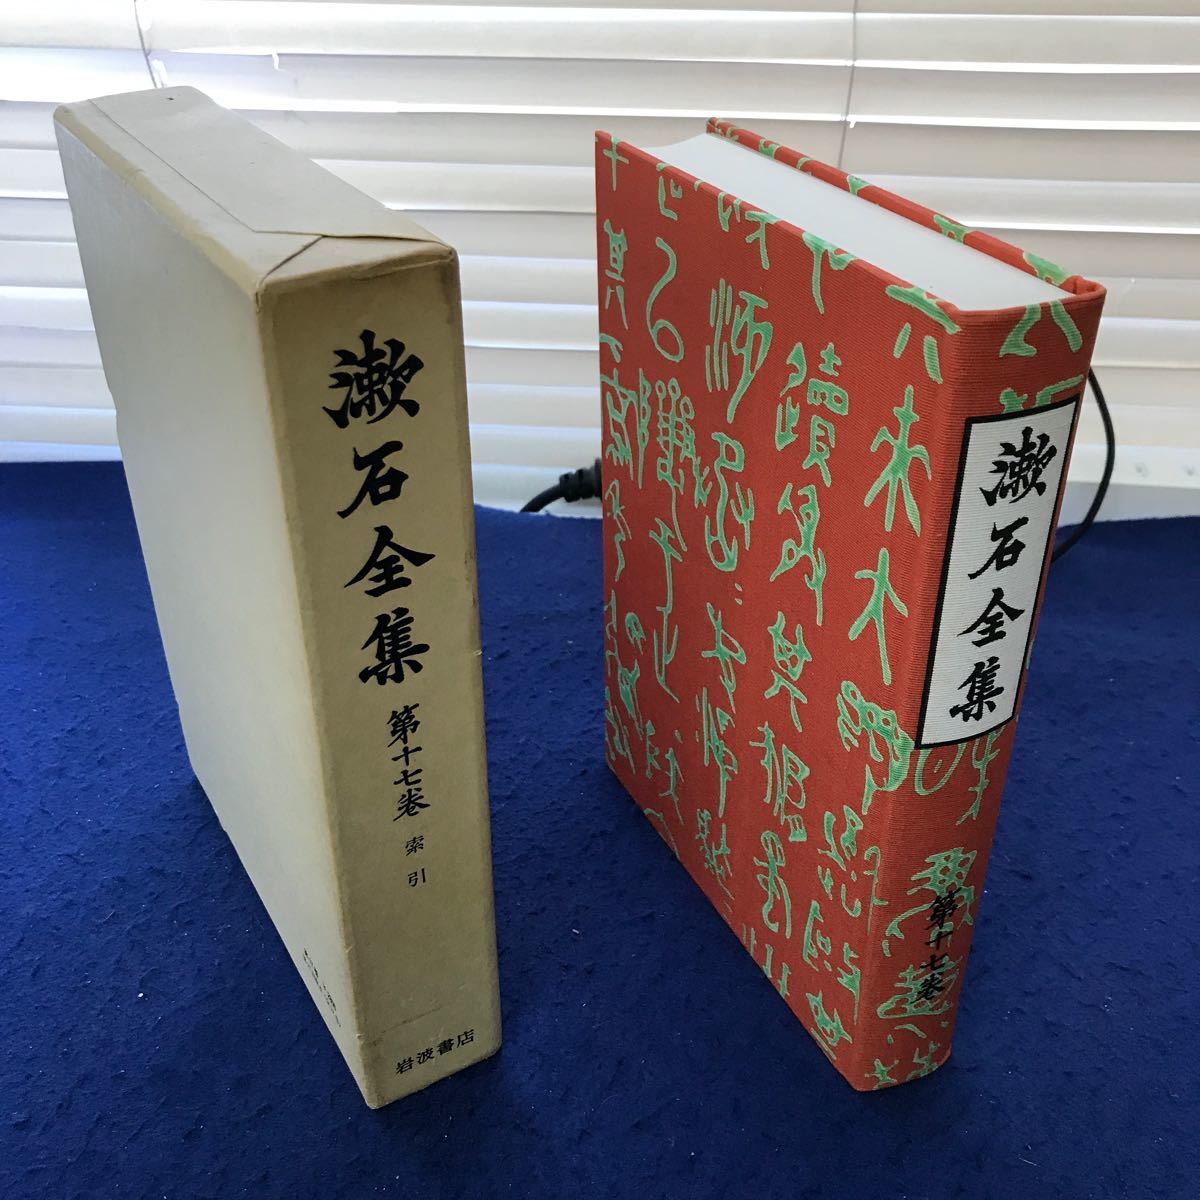 あ56-010 漱石全集 第十七巻 索引 岩波書店 外箱に傷みあり